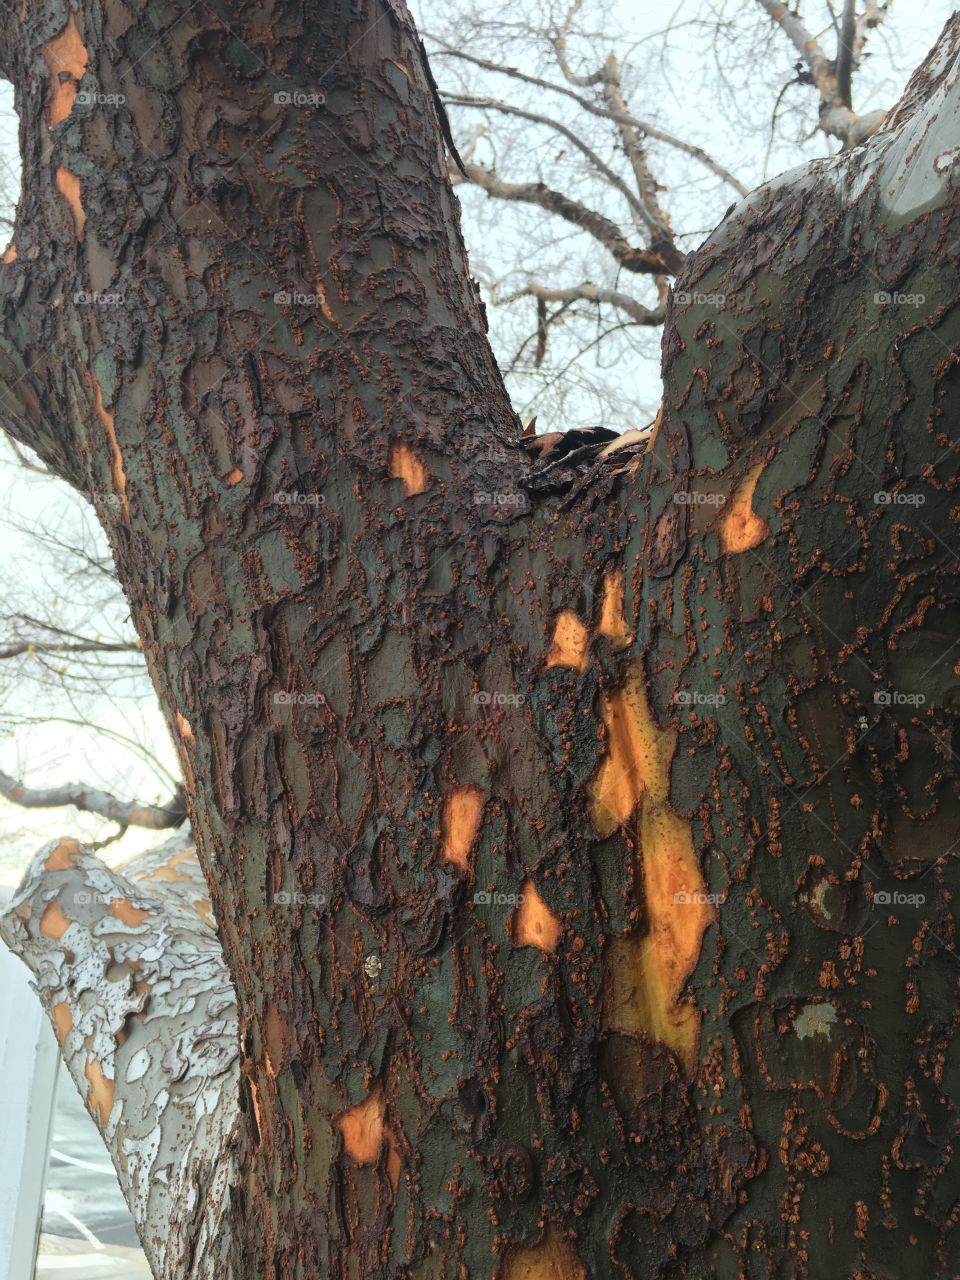 Tree up close